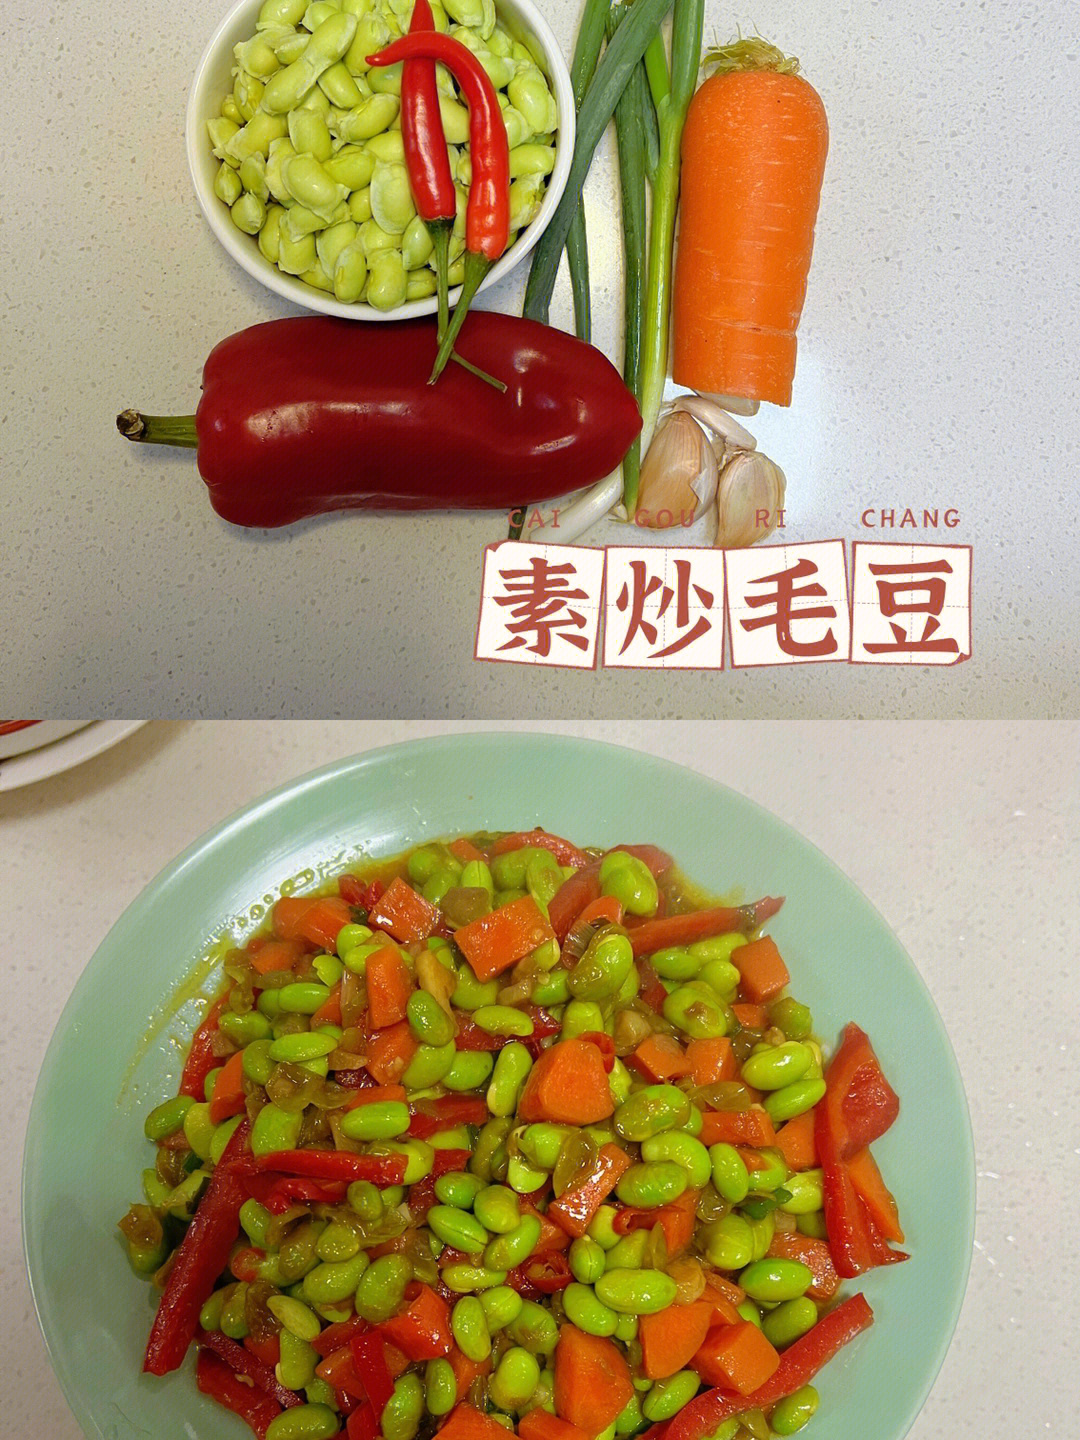 毛豆随意,一根红椒,两瓣蒜头,葱花,小米椒做法93胡萝卜切丁,辣椒